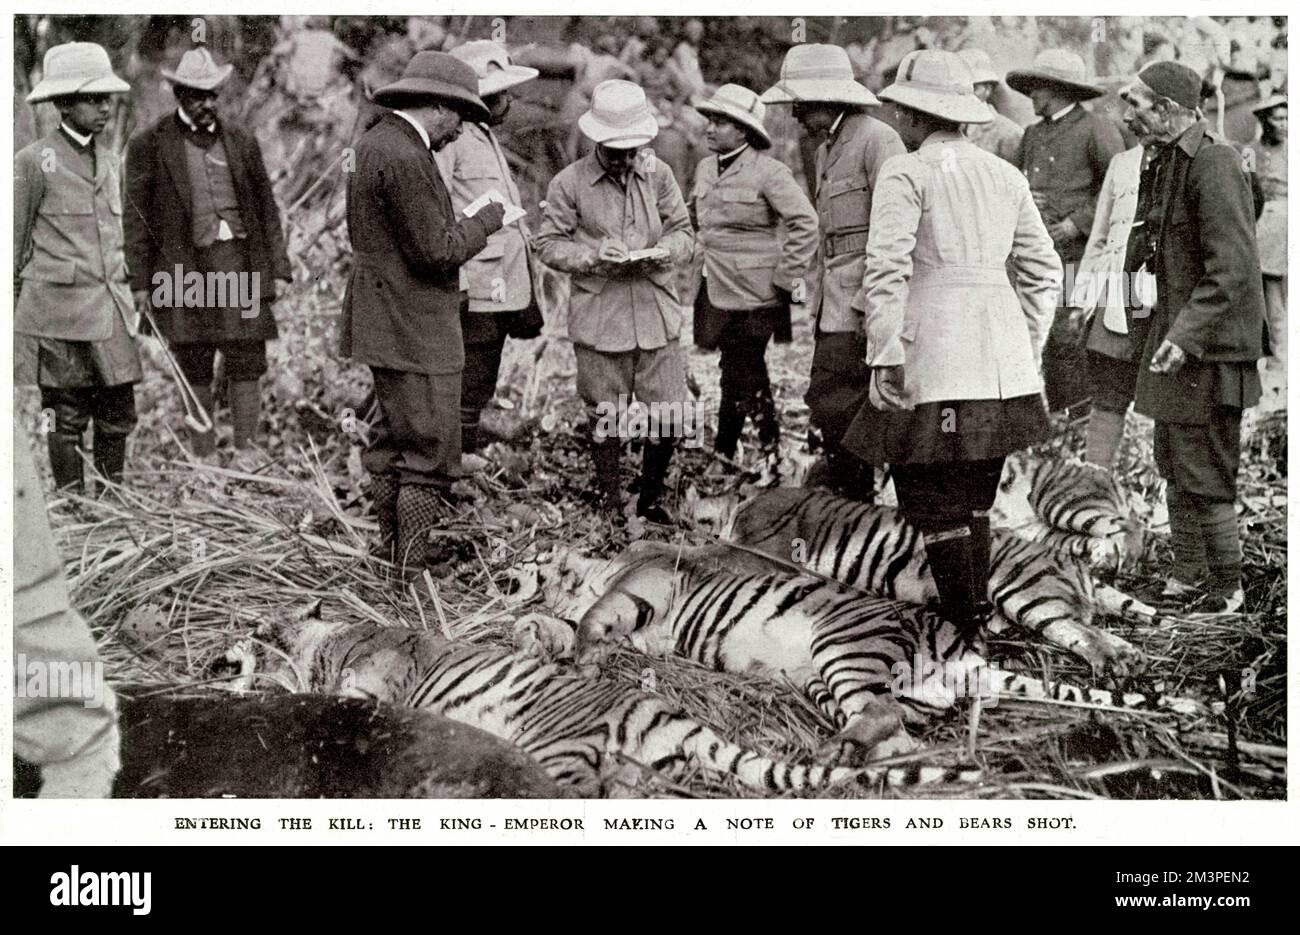 Le roi George V, au Népal, lors d'une grande expédition de tir, montrant le roi George faisant une note des tigres et des ours qu'il a tiré. Date : décembre 1911 Banque D'Images